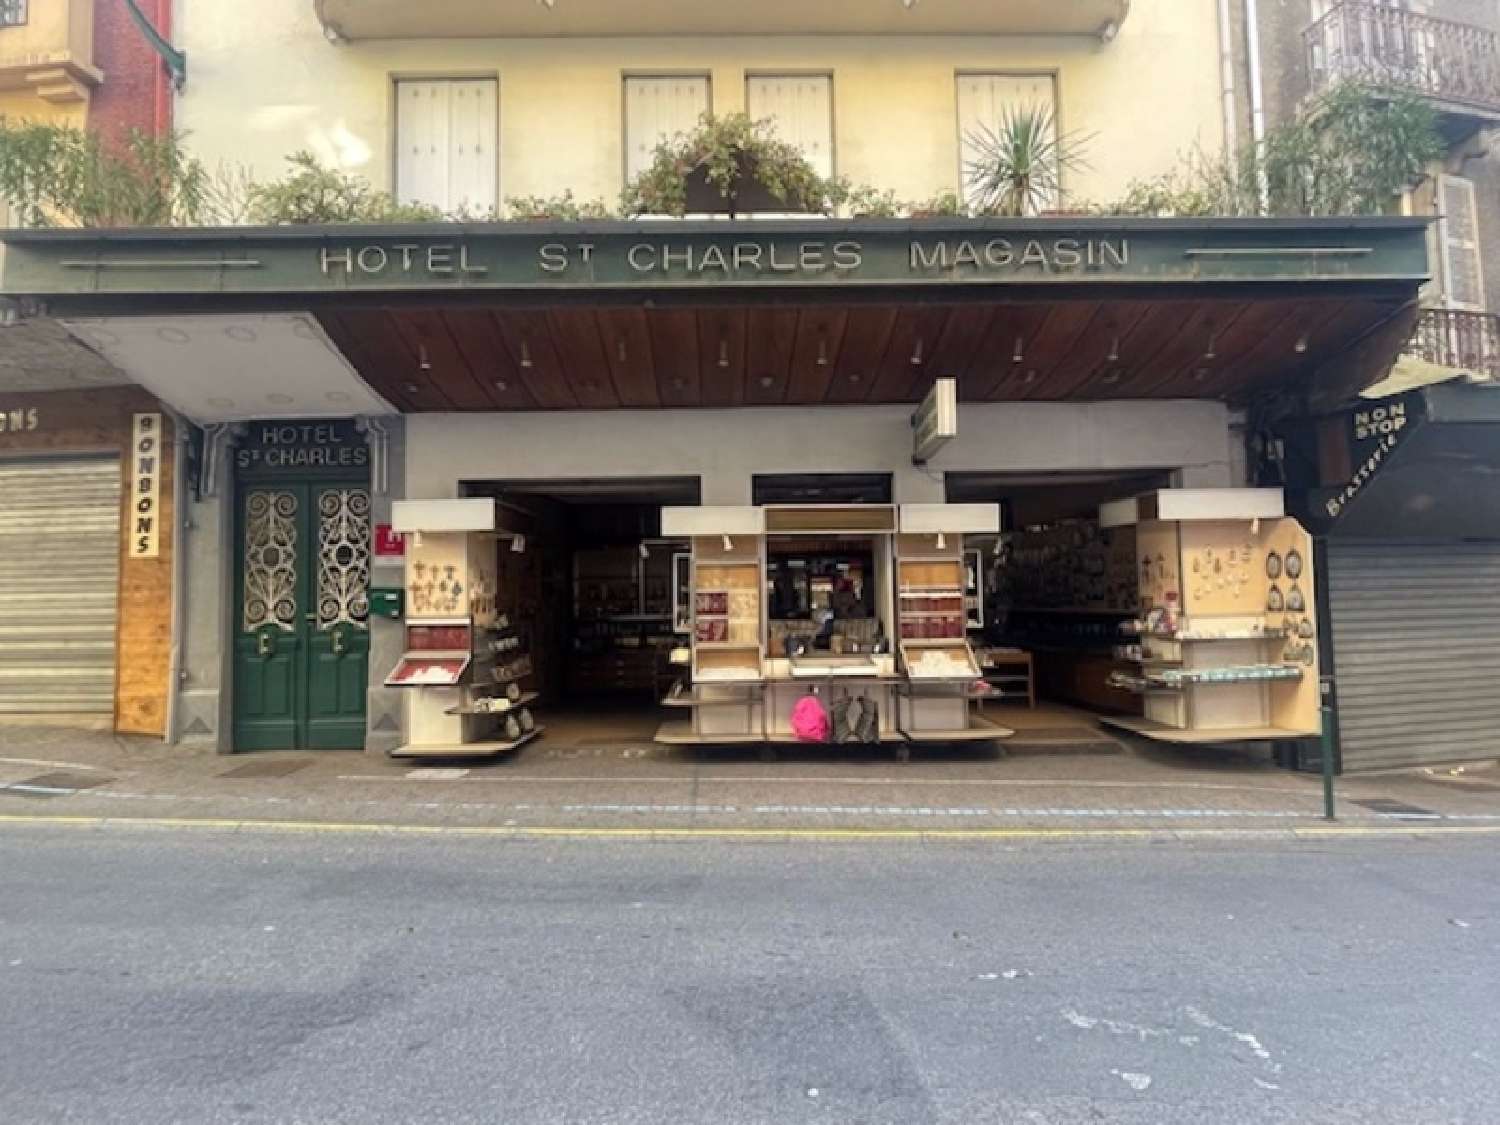  à vendre maison Lourdes Hautes-Pyrénées 1